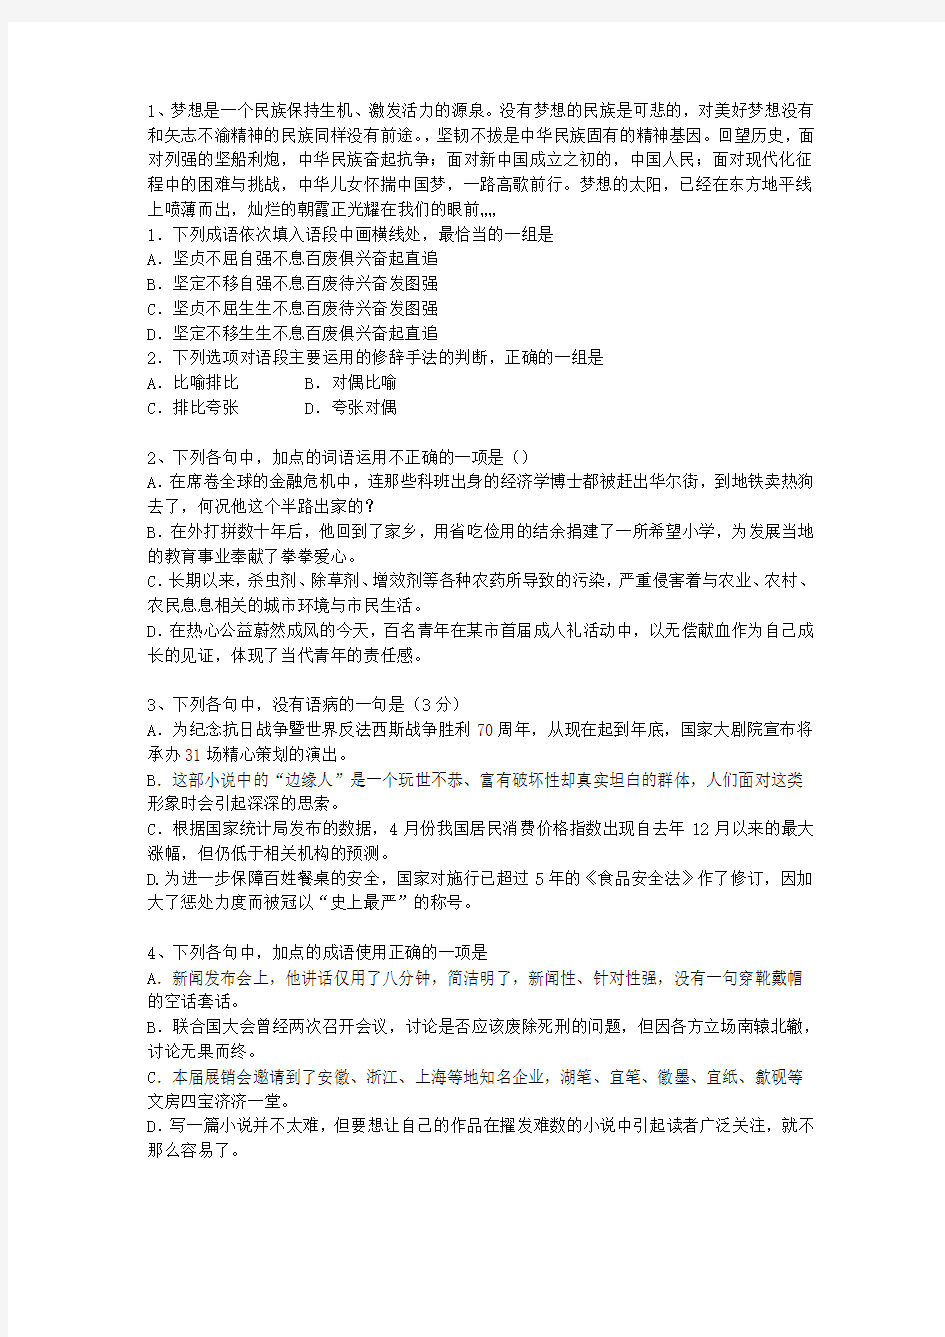 2013四川省语文大纲(答案详解版)(必备资料)